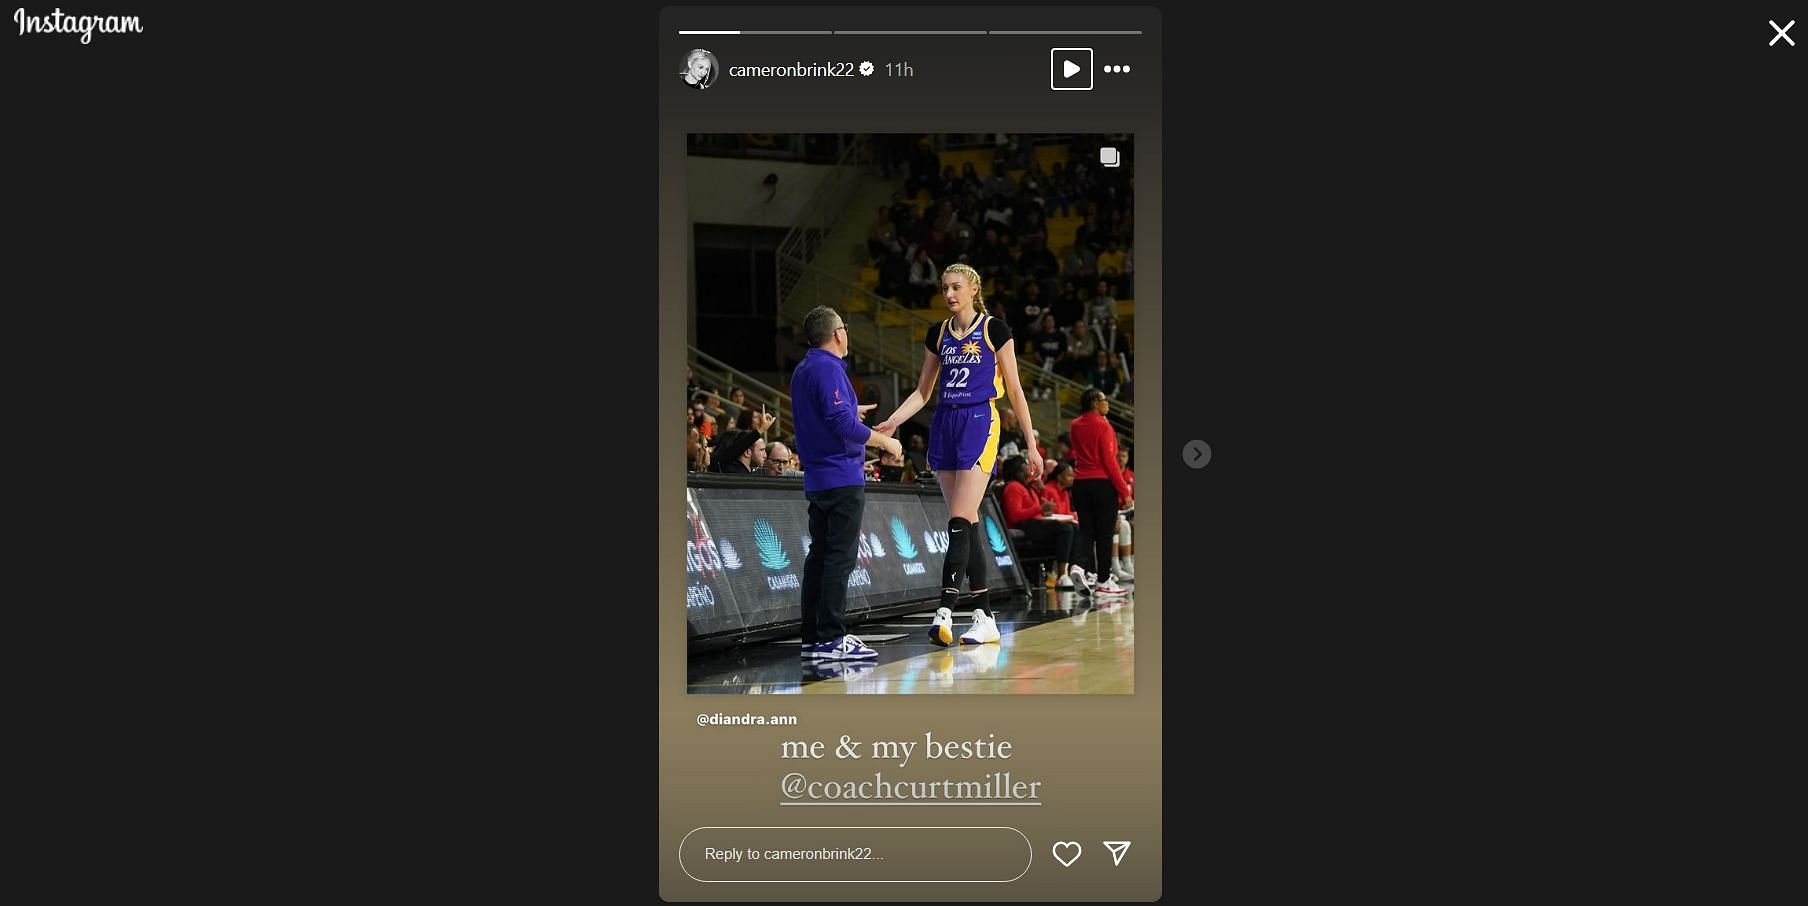 Cameron Brink calls Curt Miller bestie in her Instagram story